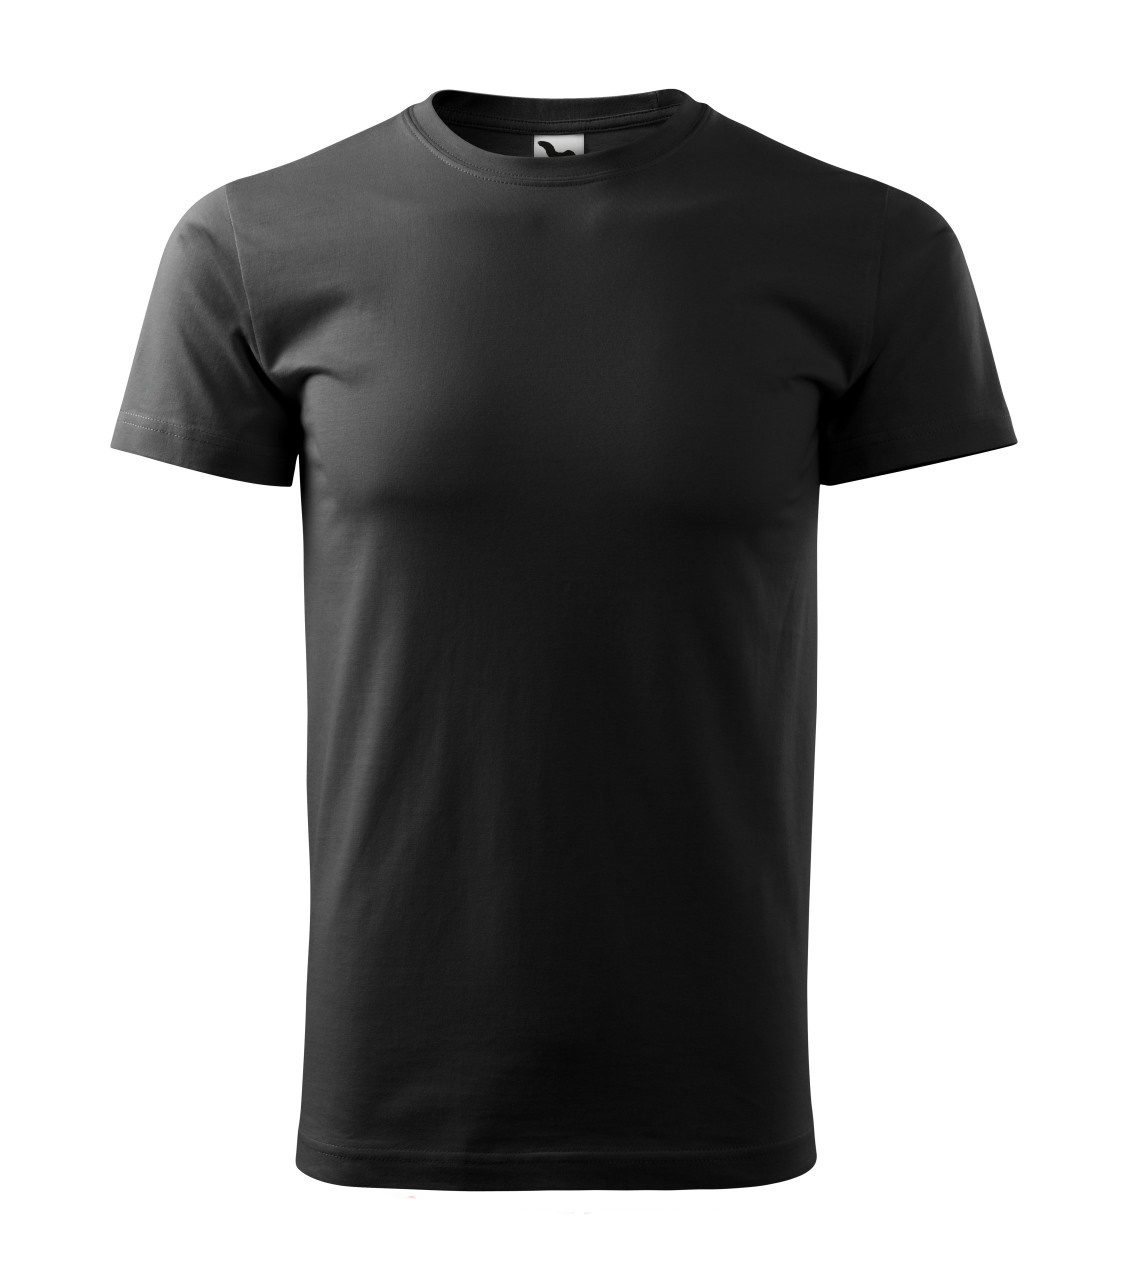 Pánske tričko ADLER Basic 129 - čierne